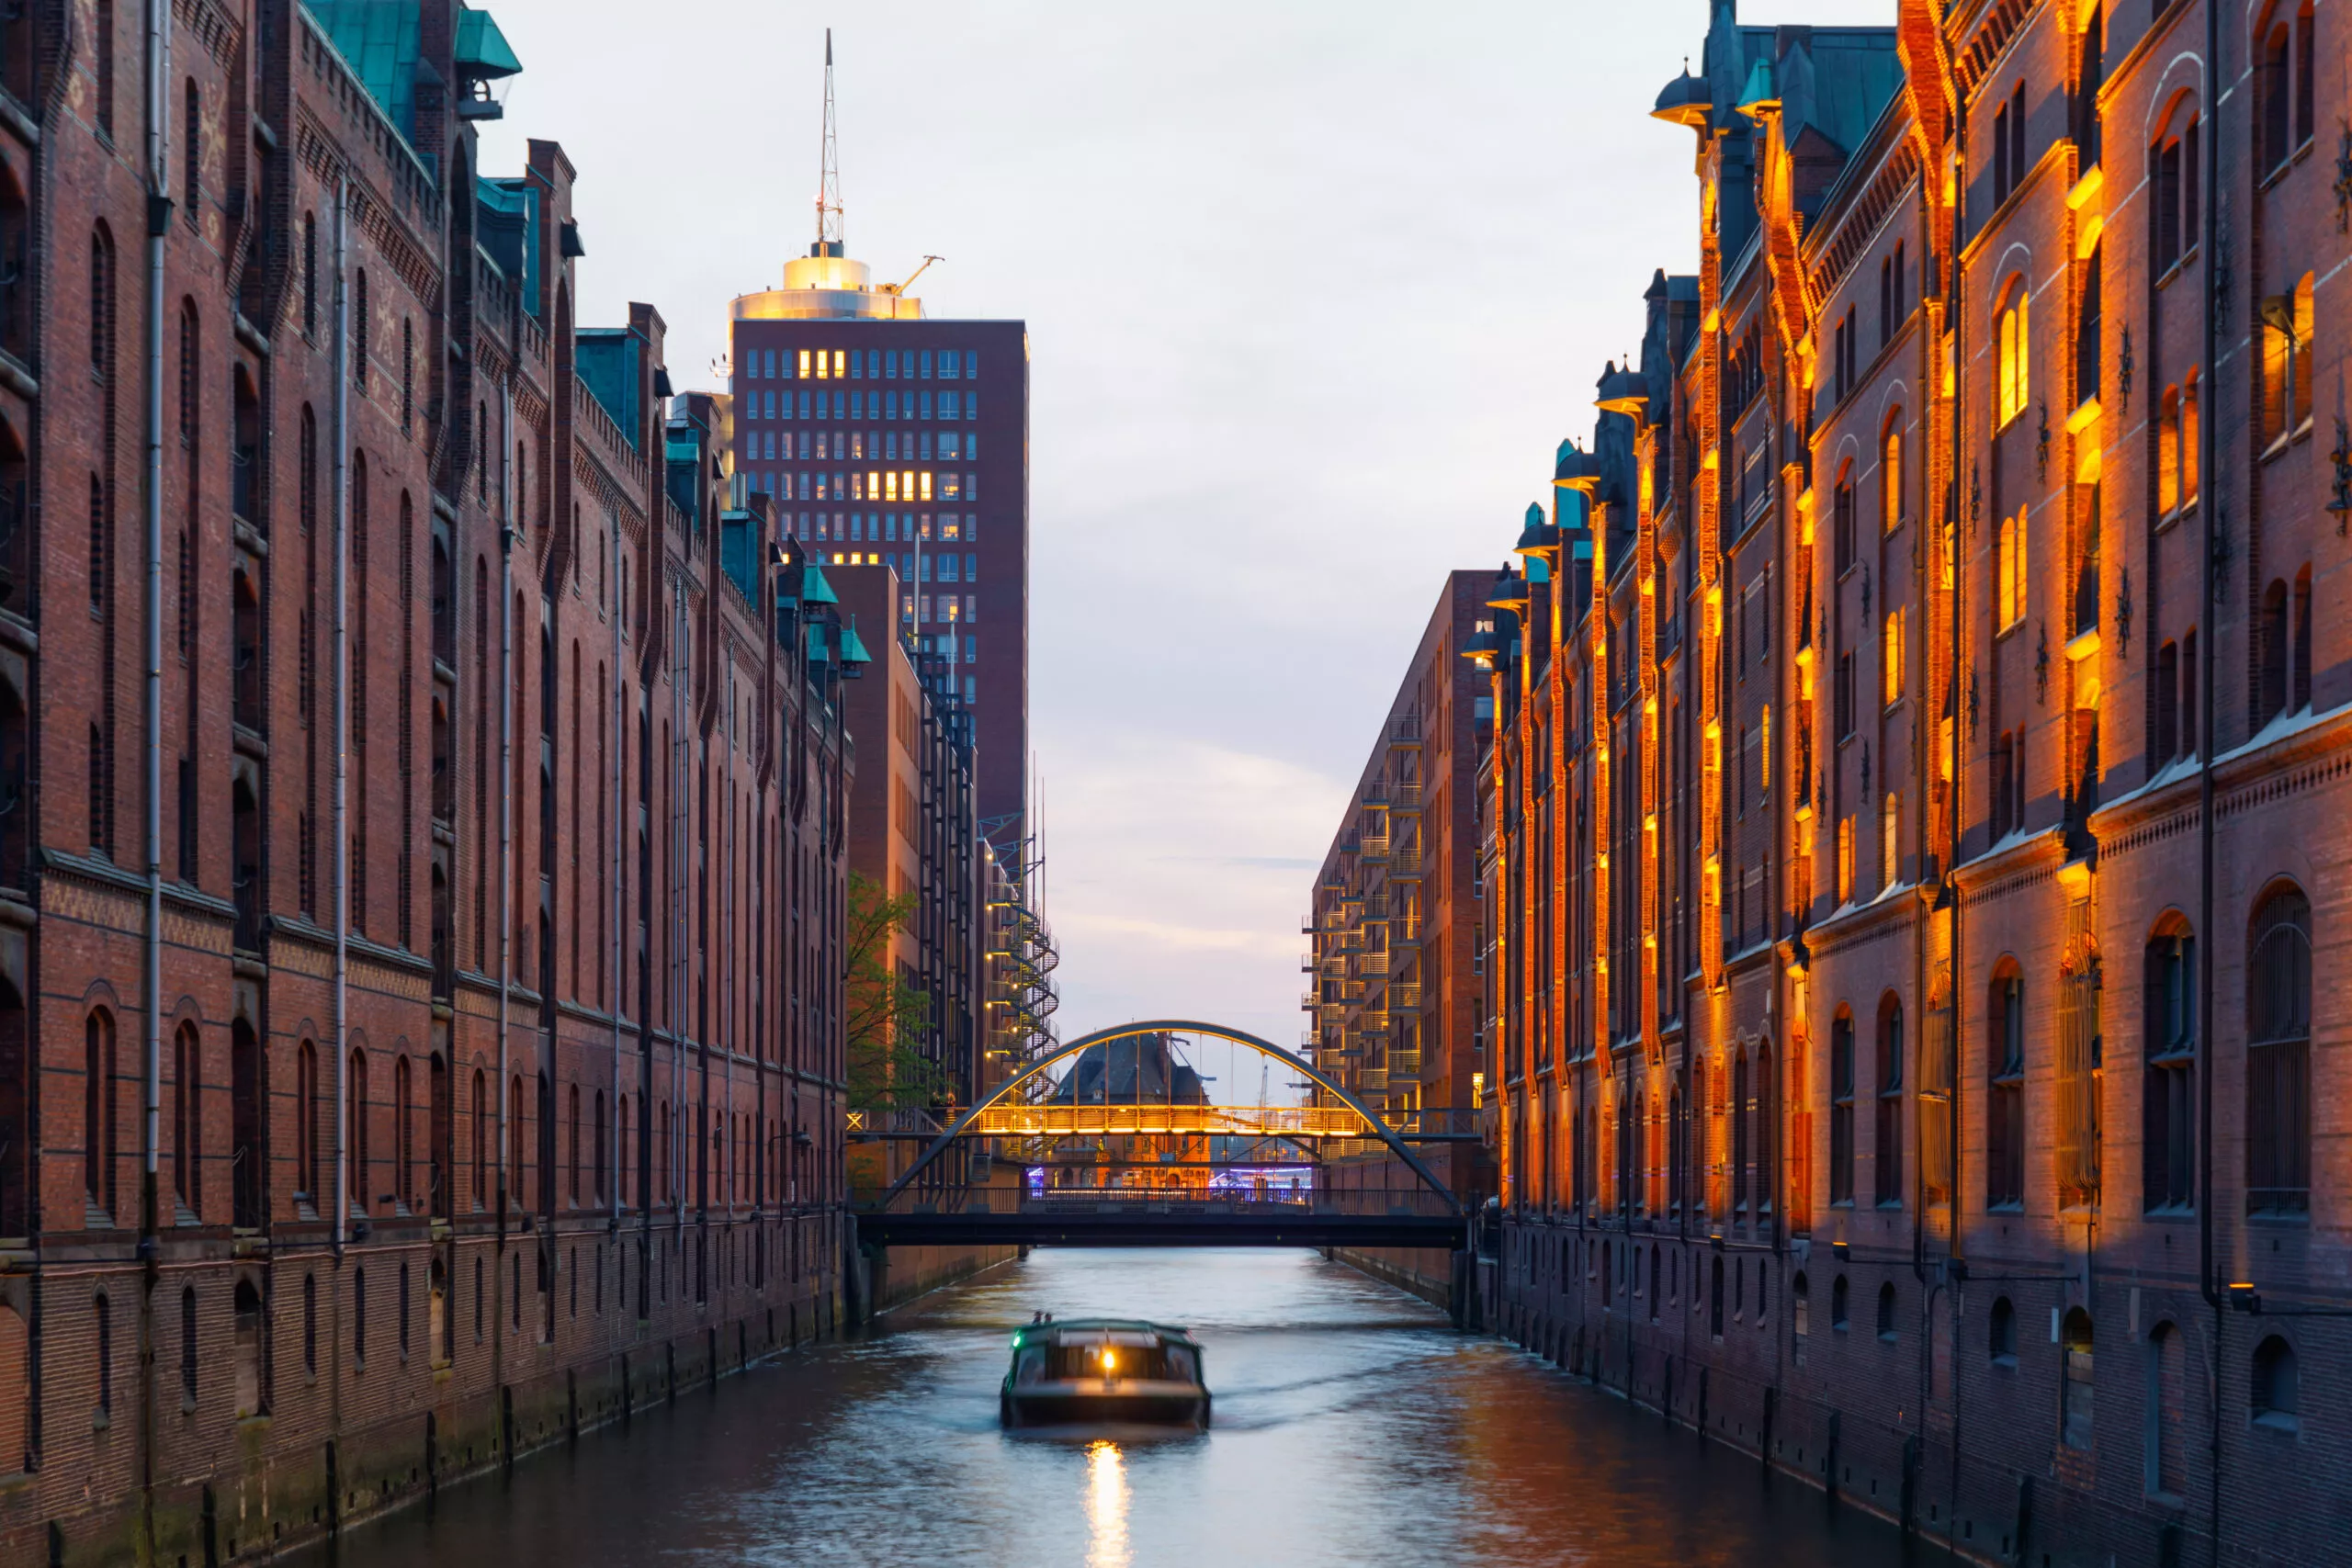 Båt i kanal vid historiska hamnen Speicherstadt i Hamburg vid solnedgången